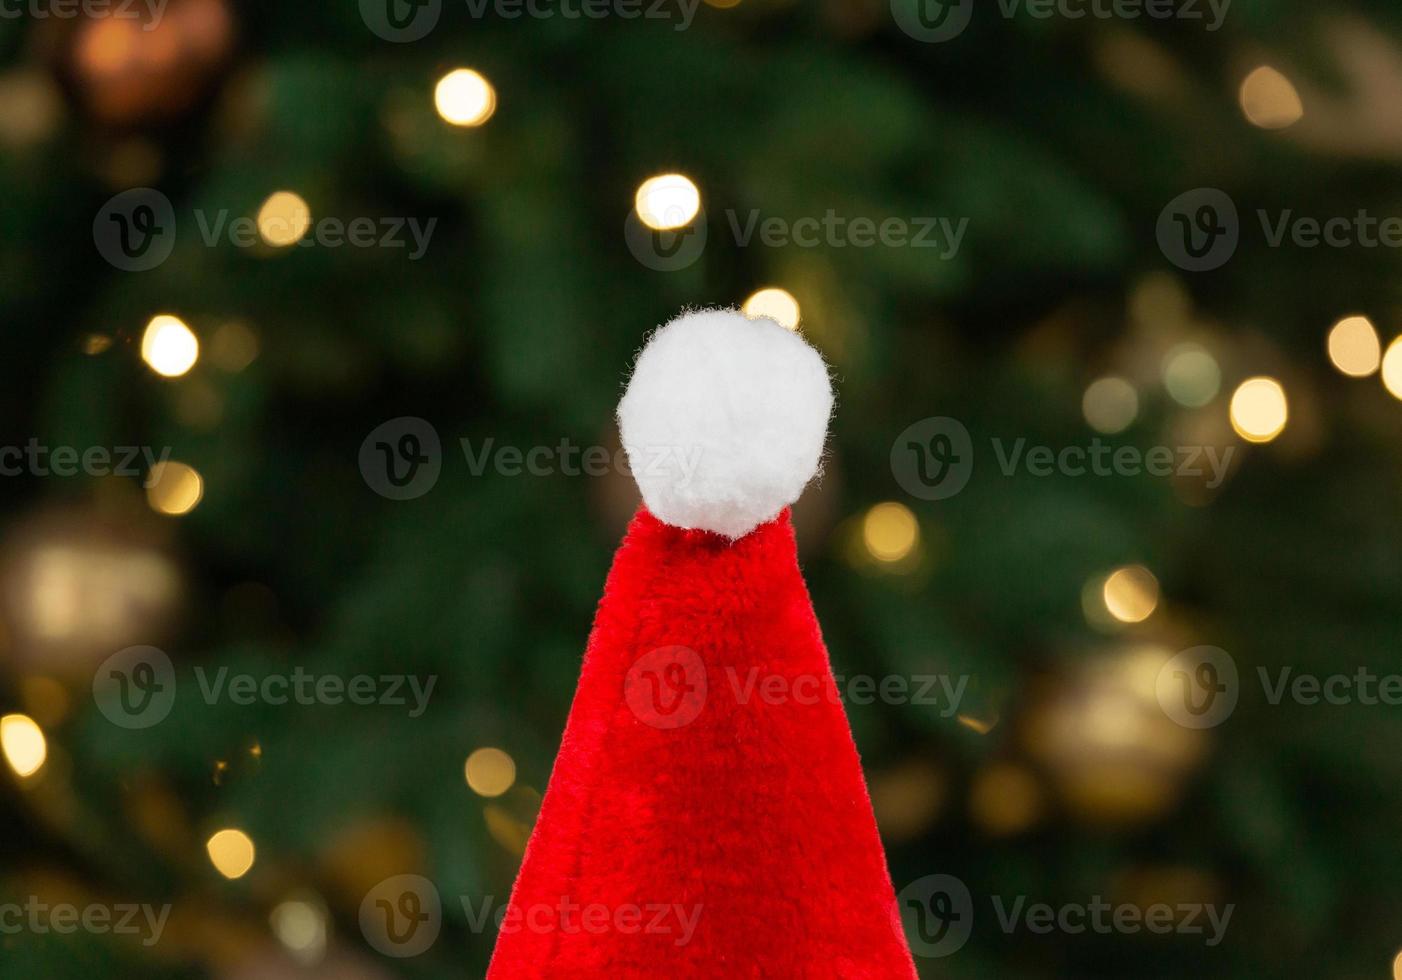 Bonnet de Noel sur le fond d'un arbre de Noël et des guirlandes photo